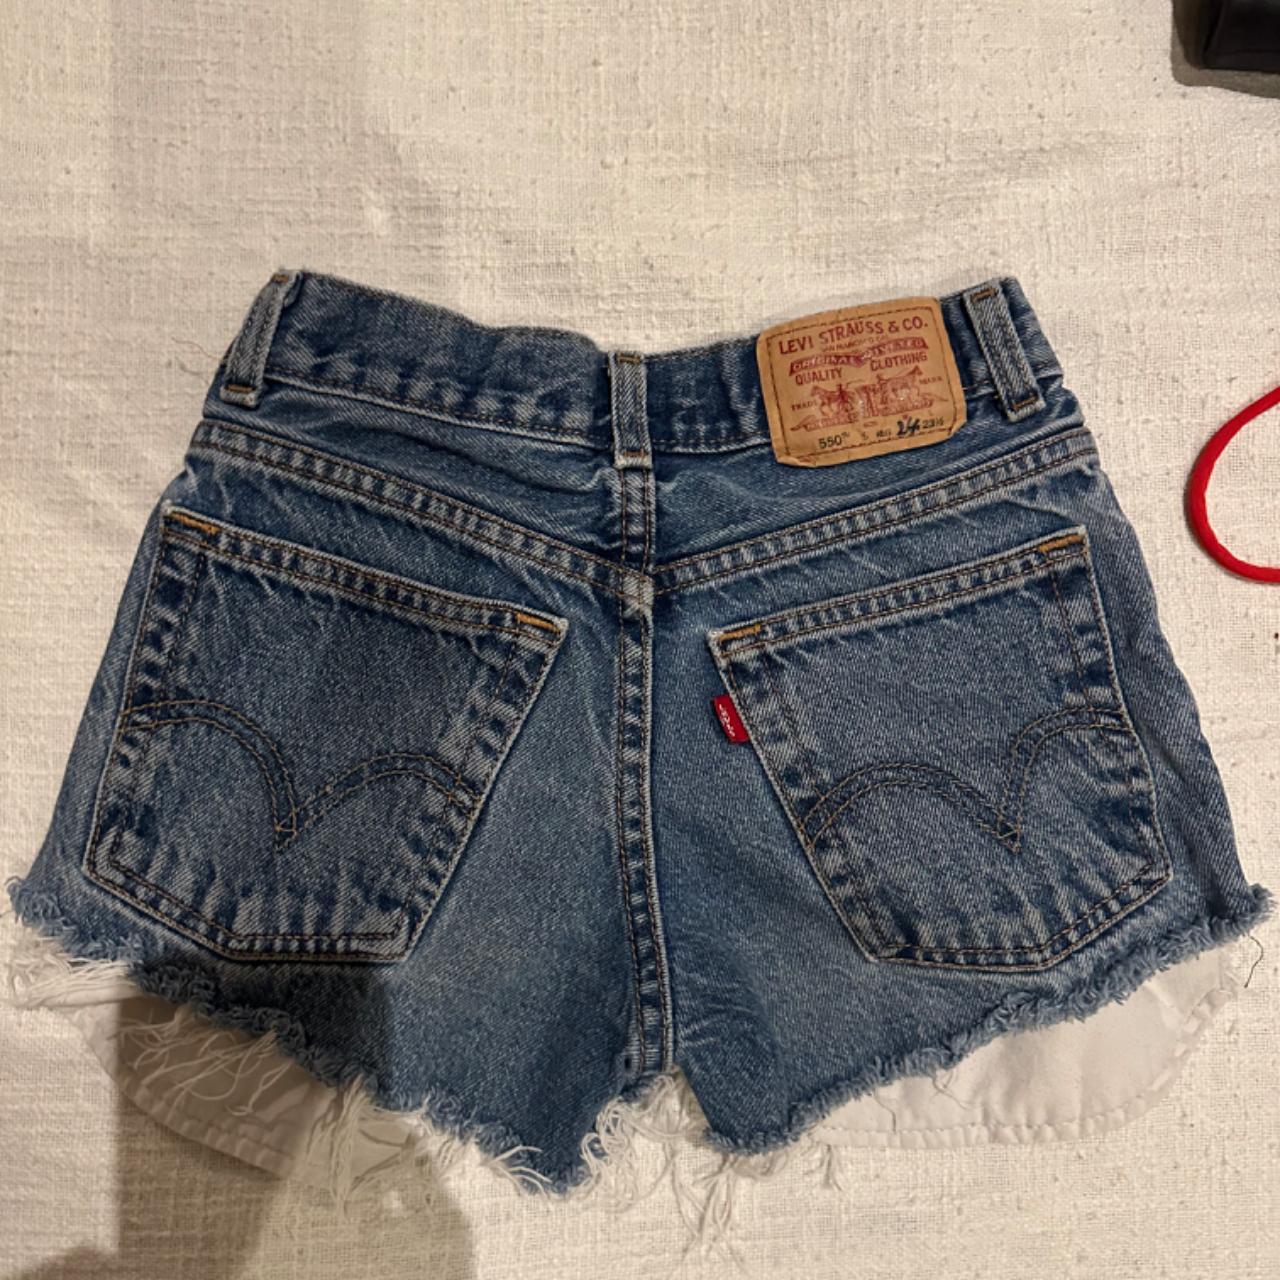 Vintage Levi’s shorts 🤍 Size 24 (would fit a size... - Depop